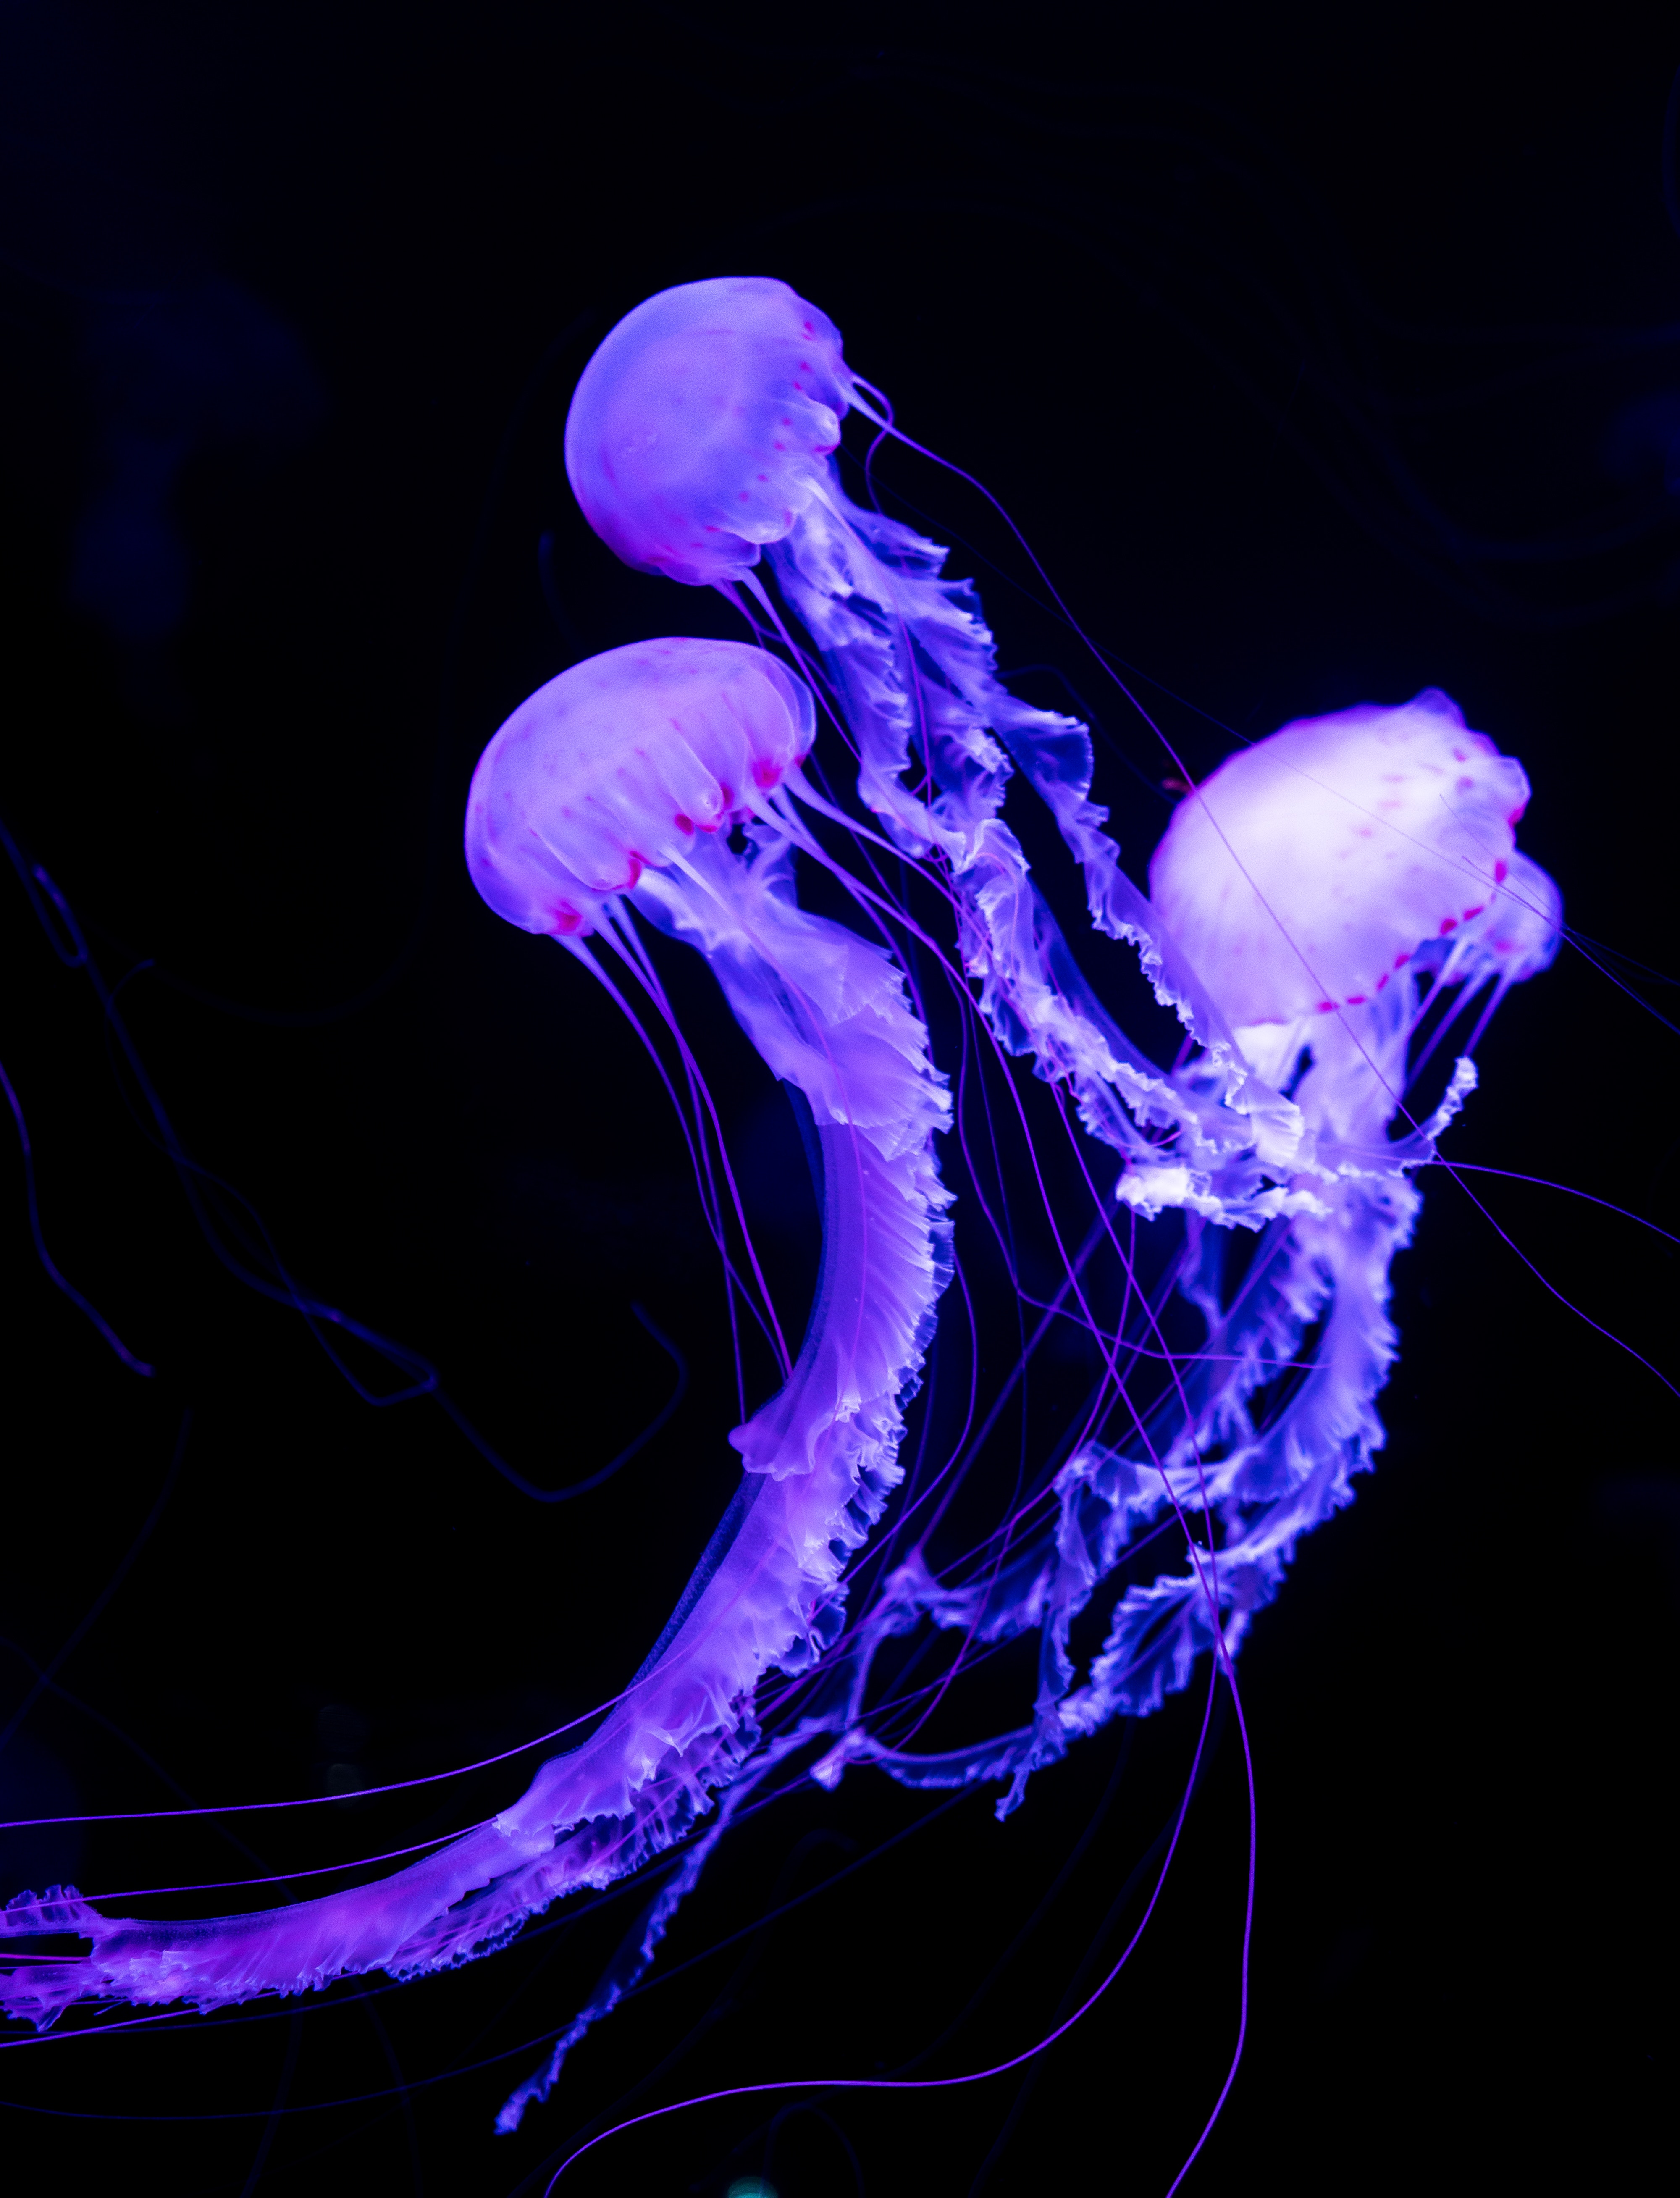 jellyfish, animals, neon, underwater world, luminous